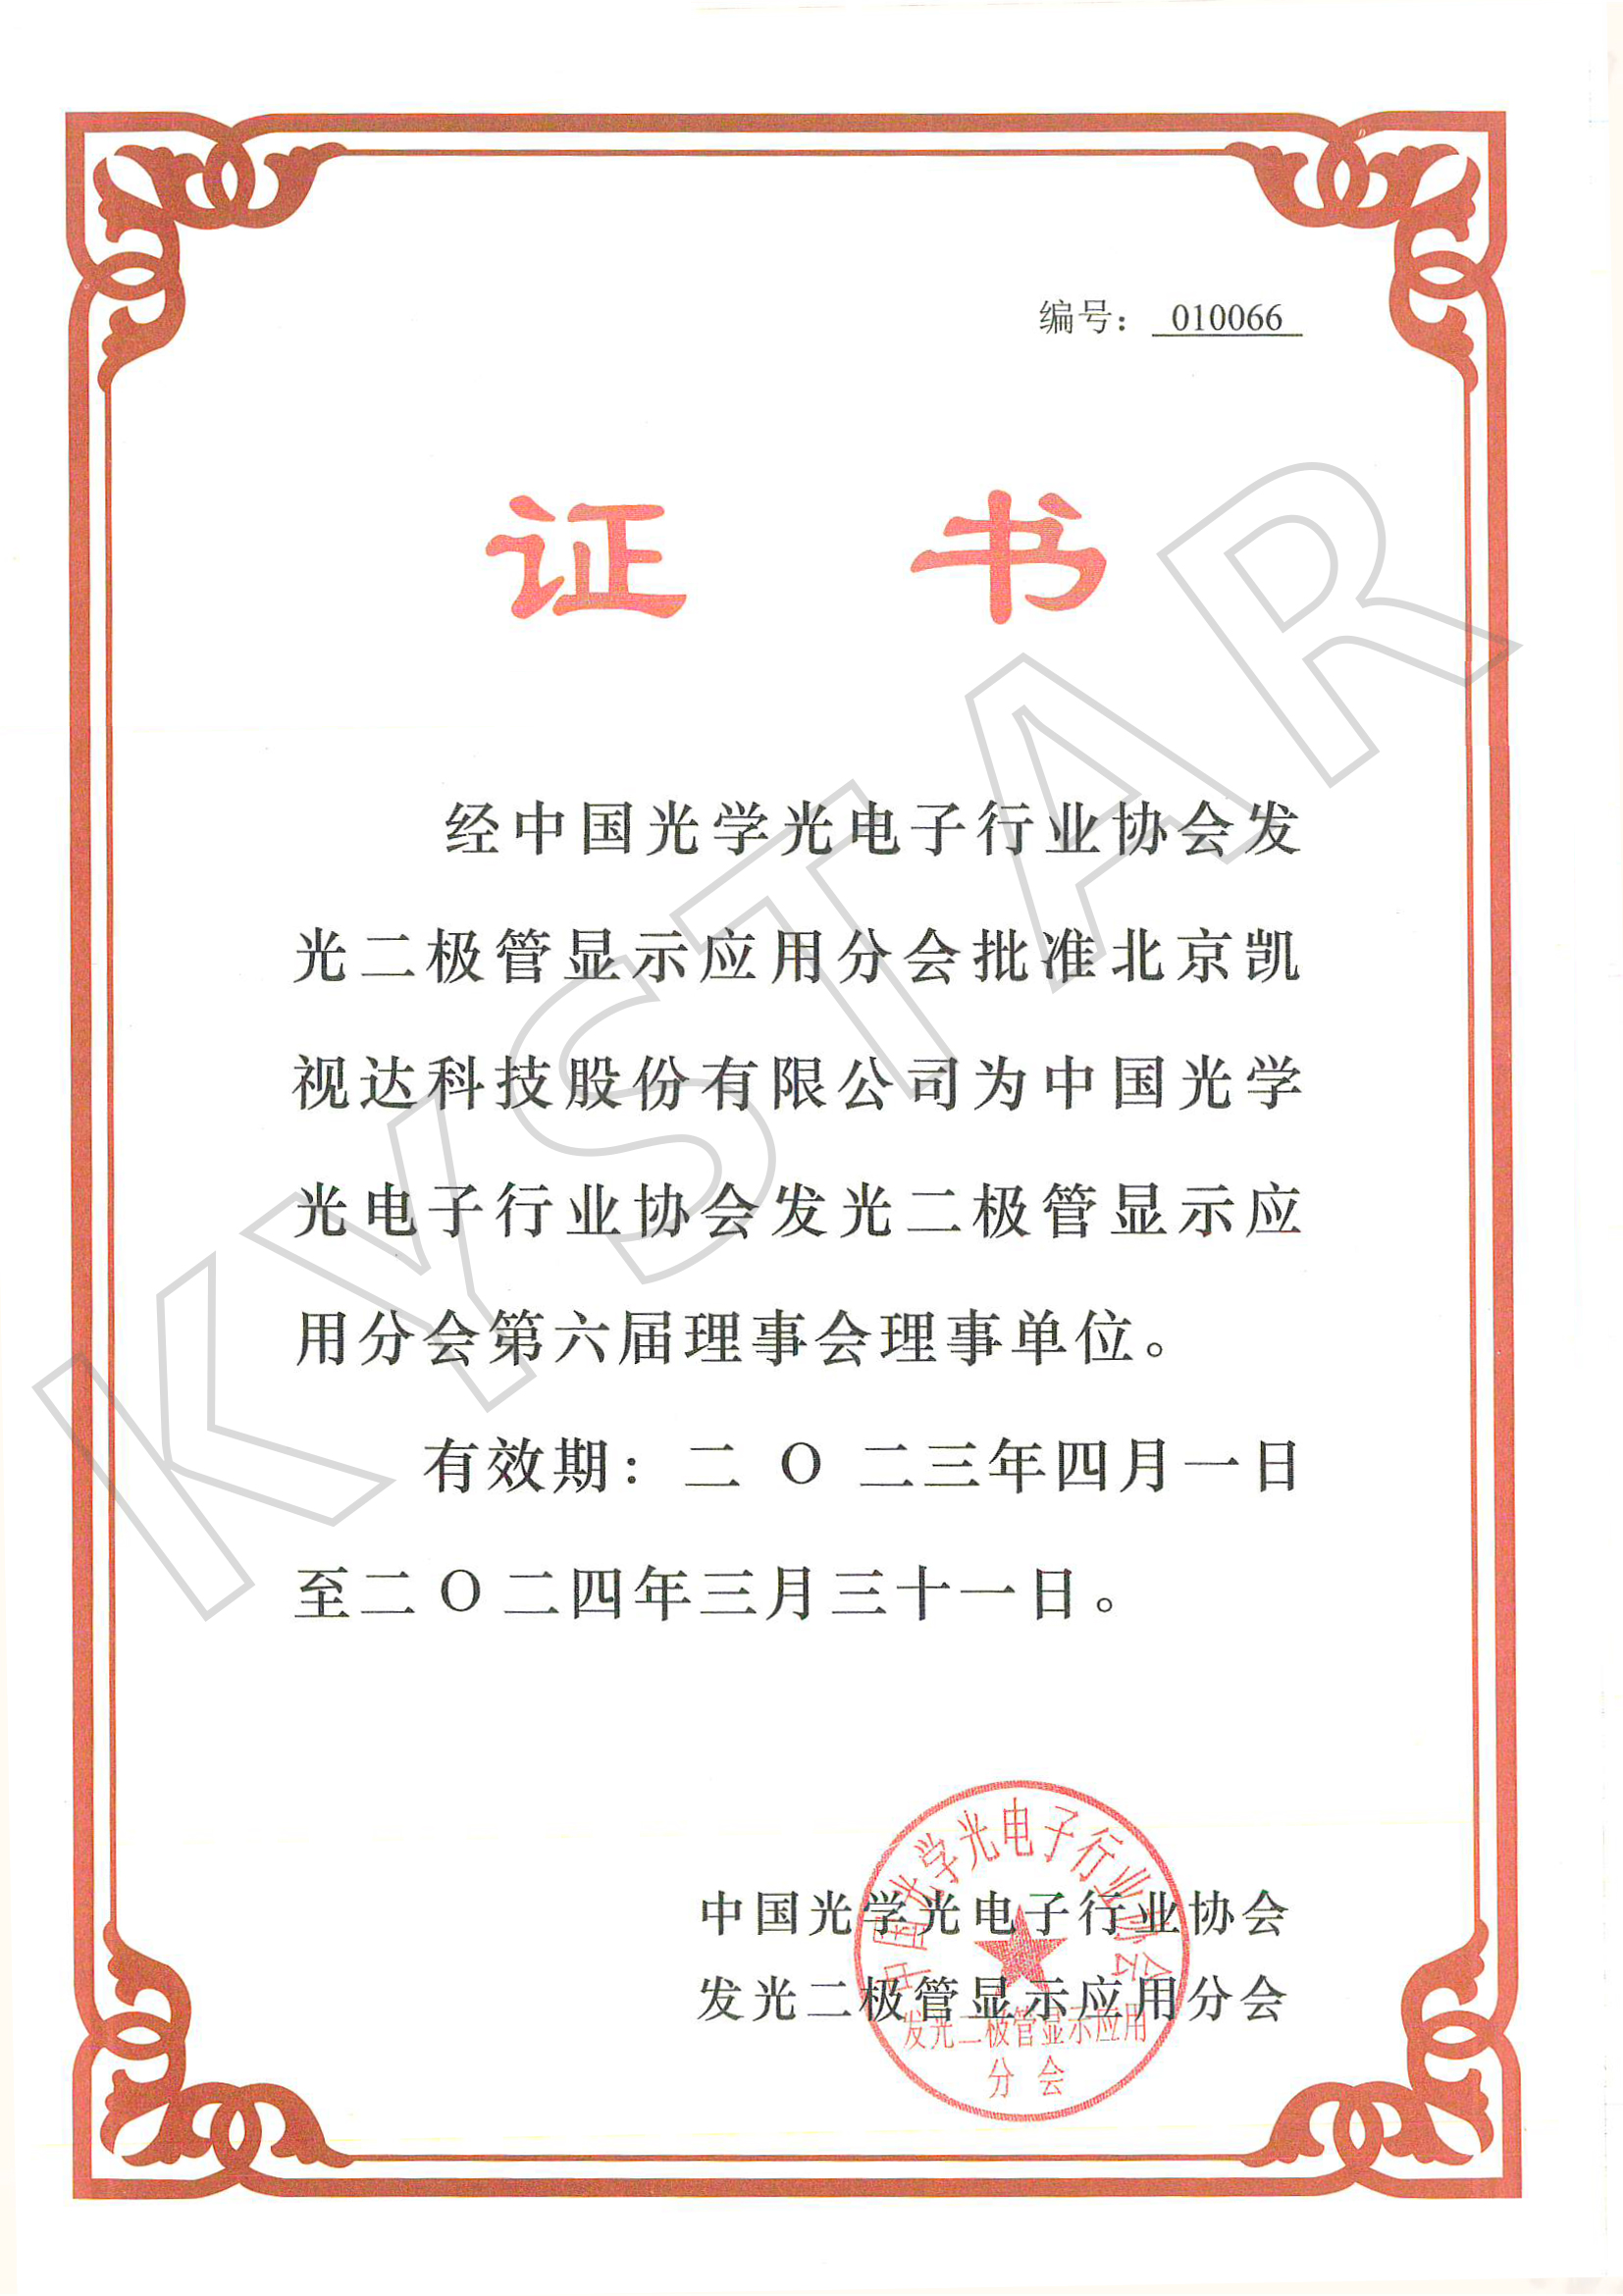 中国光学光电子行业协会发光二极管显示应用分会第六届理事会理事单位